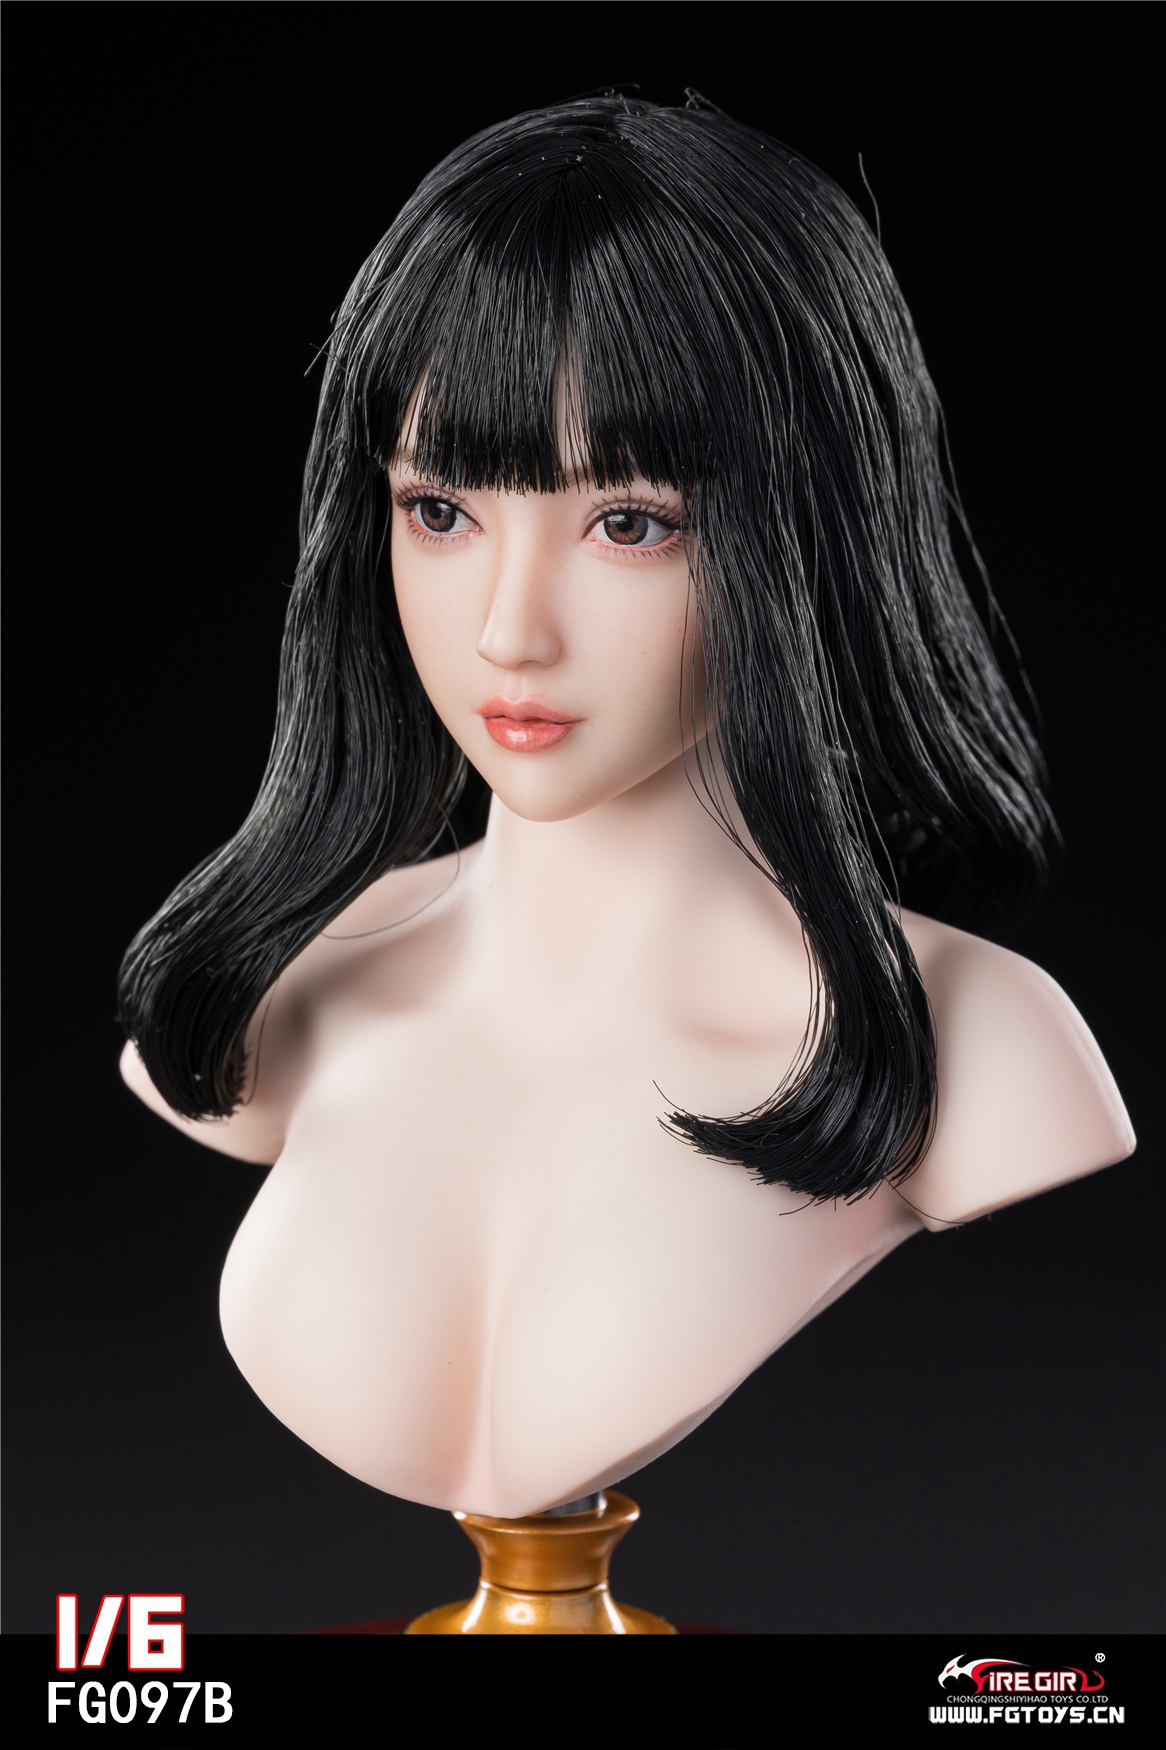 firegirl - NEW PRODUCT: Fire Girl Toys: Asian Girl Head Sculpture (FG097A/FG097B/FG097C) 1372